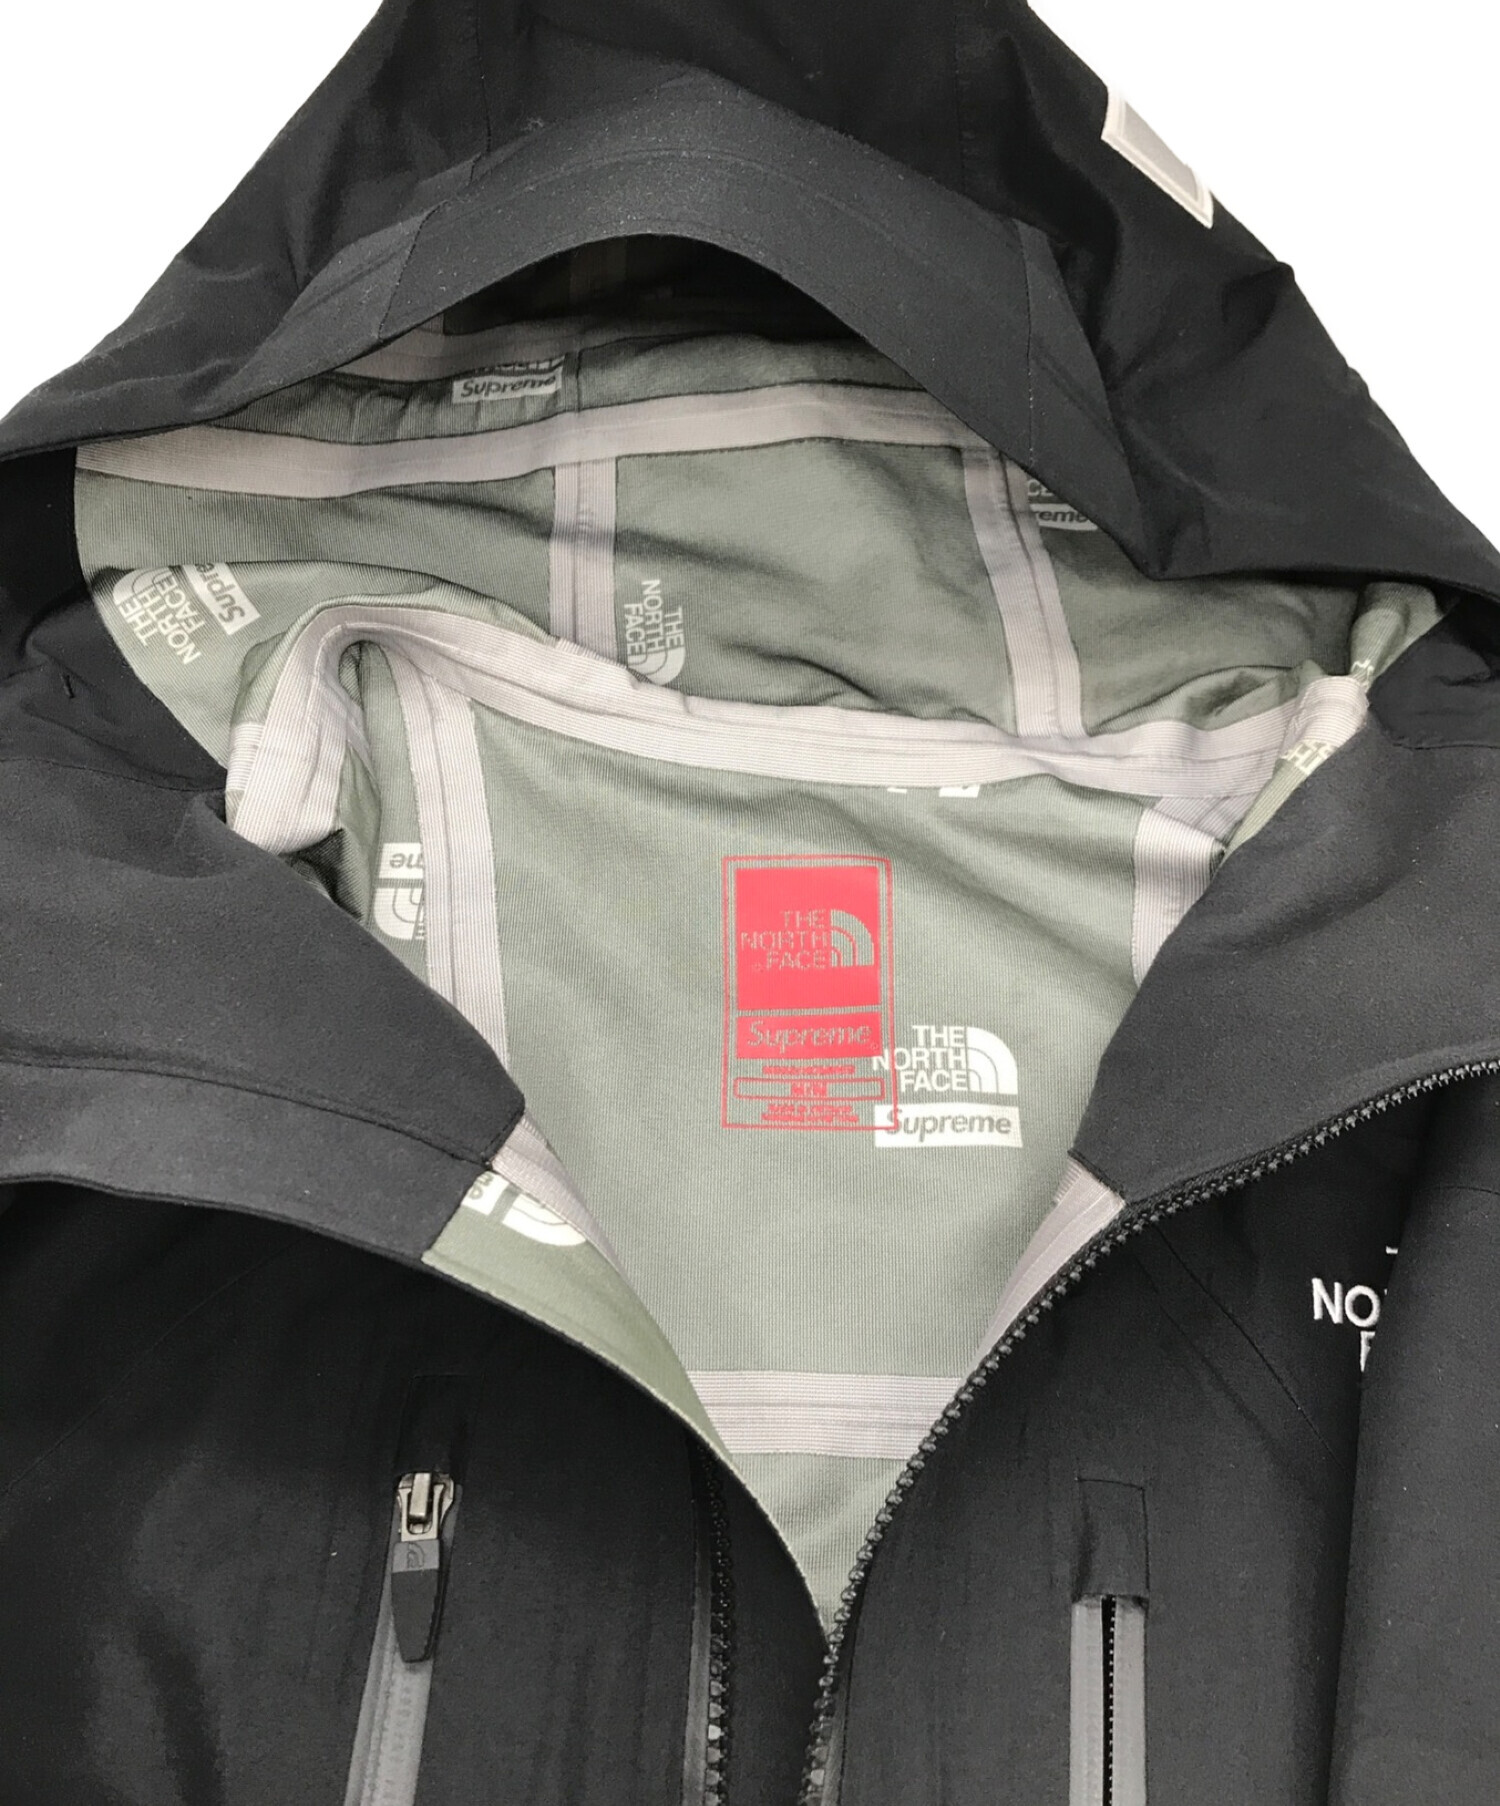 THE NORTH FACE (ザ ノース フェイス) SUPREME (シュプリーム) 22SS Summit Series Rescue  Mountain Pro Jacket ブラック サイズ:M